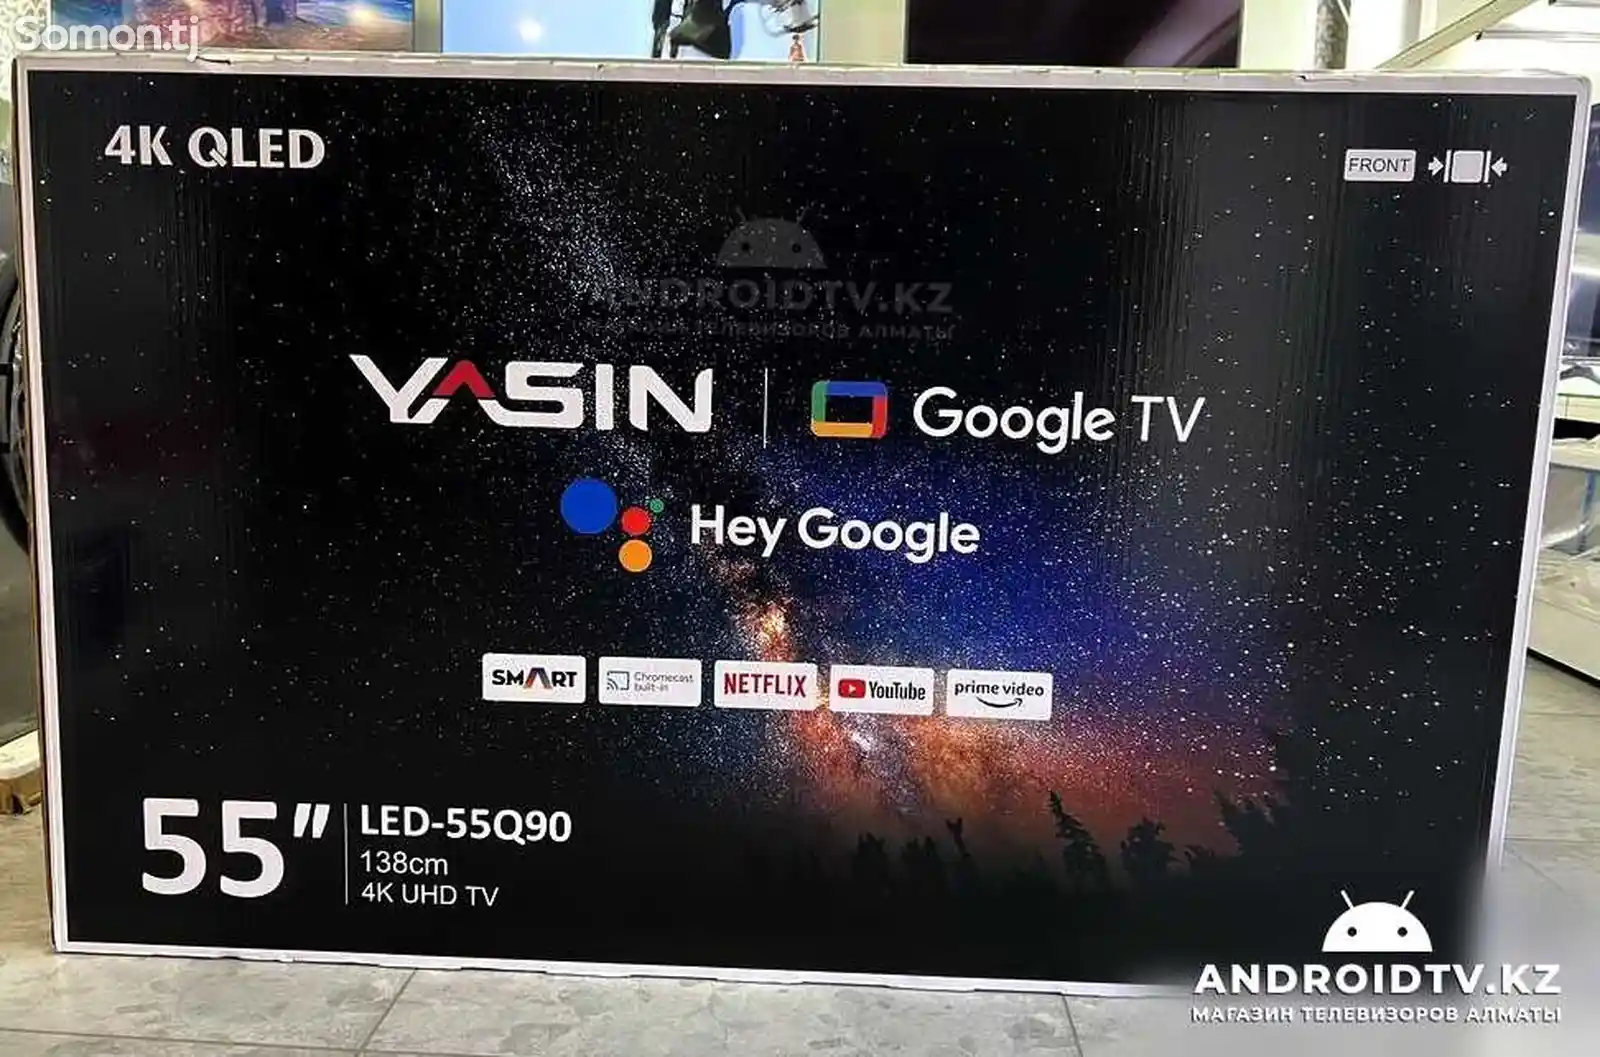 Телевизор Yasin Qled 55Q90 - Google TV-1